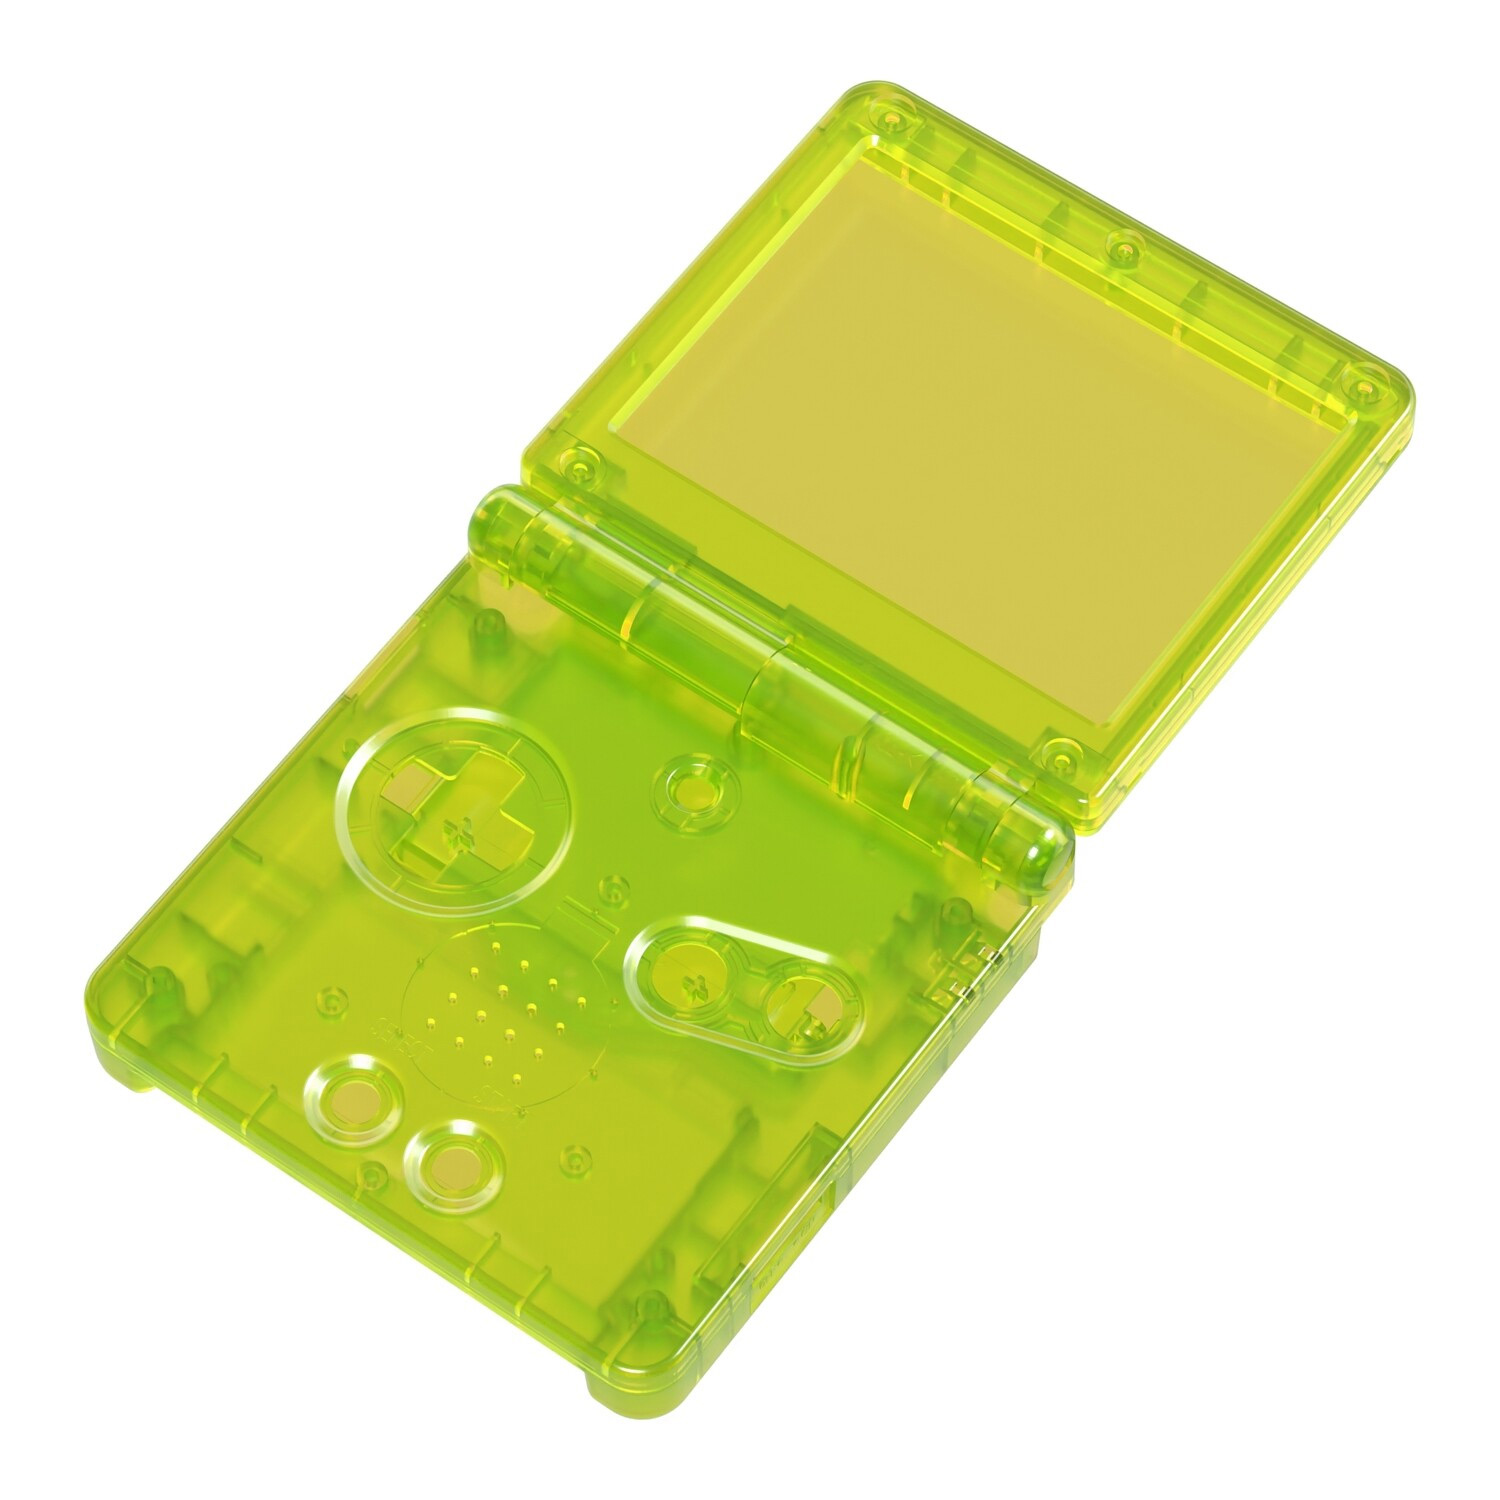 Gehäuse (Clear Yellow) für Game Boy Advance SP